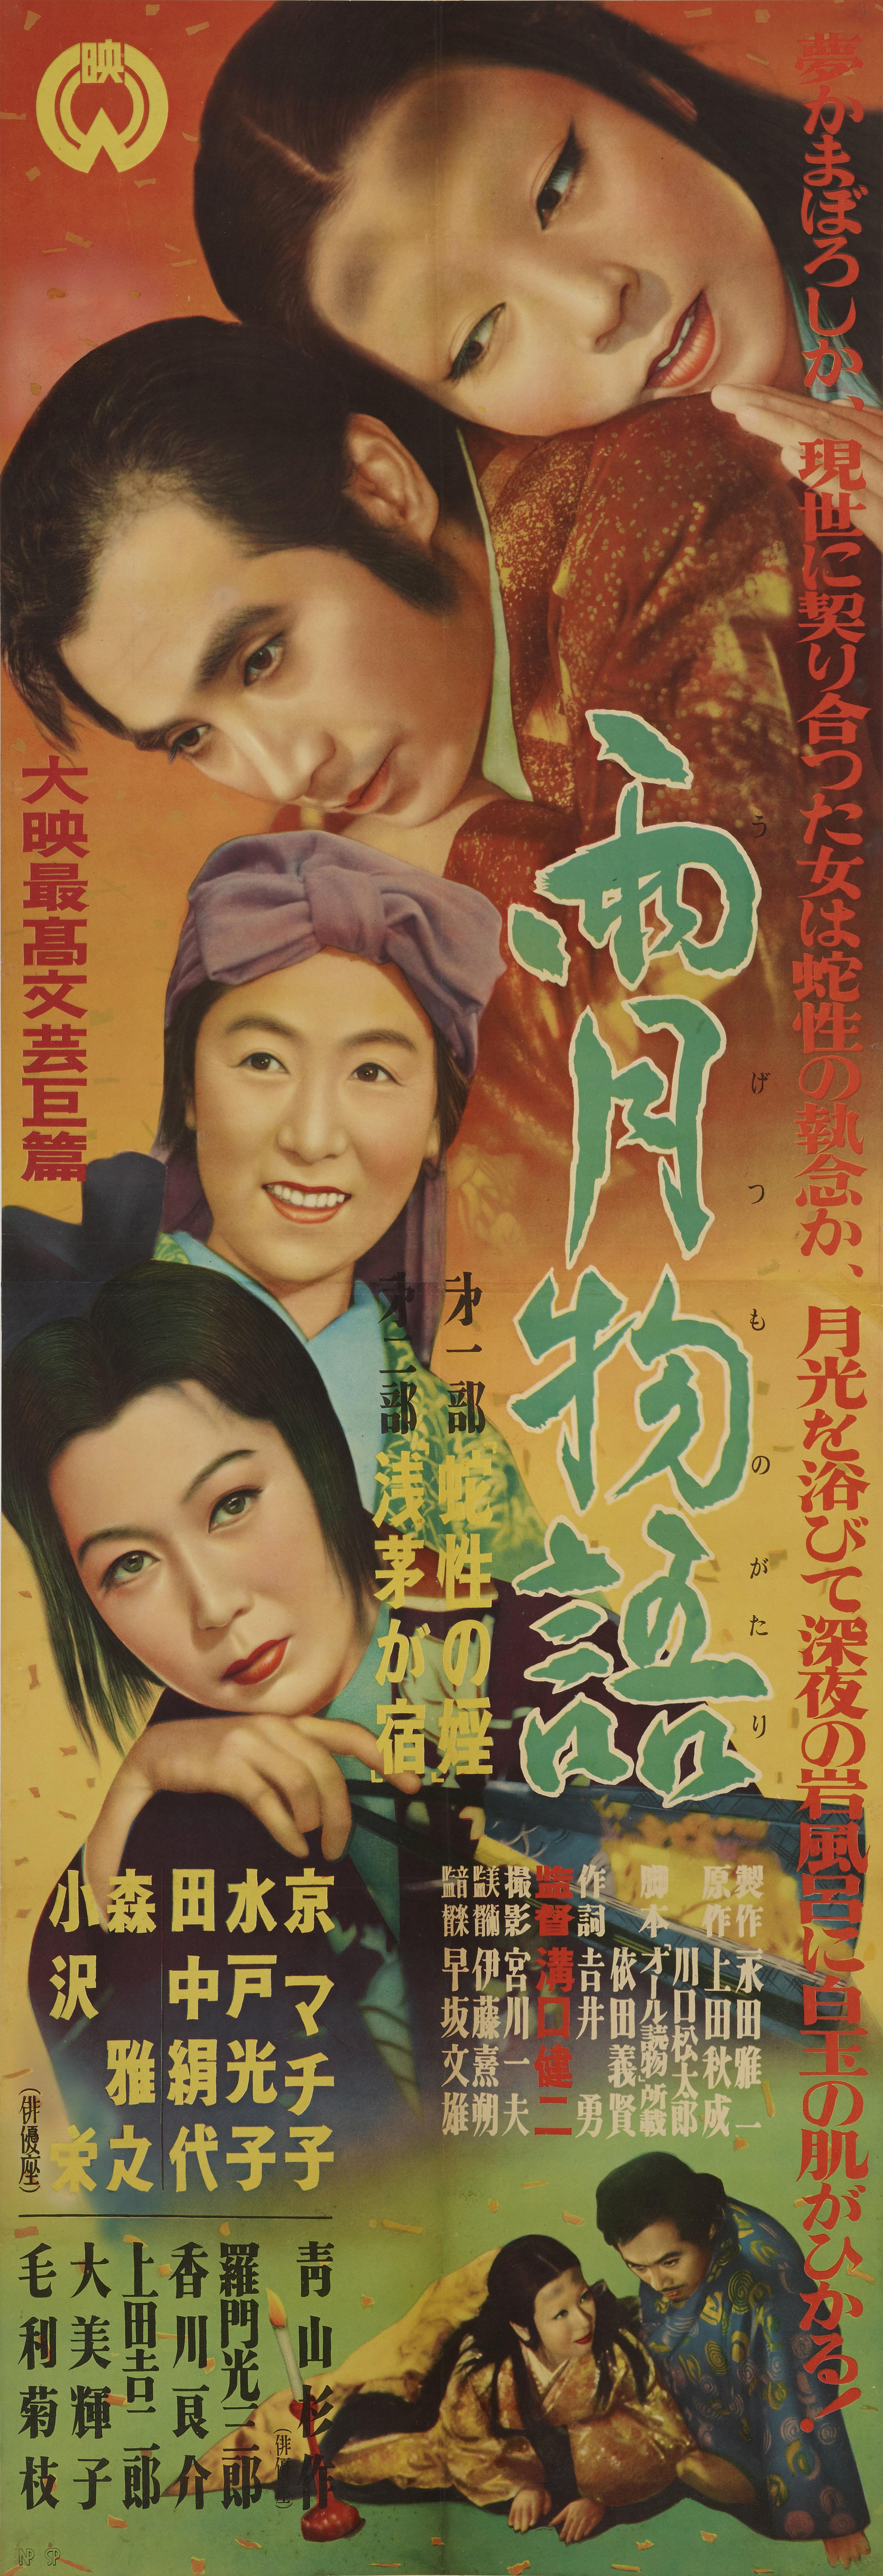 Affiche originale du film japonais de 1953 de Kenji Mizoguchi avec Masayuki Mori et Machiko Kyo.
en 1922, un changement important s'est produit dans la culture japonaise. Depuis le XVIIe siècle, les femmes n'avaient pas le droit de participer au